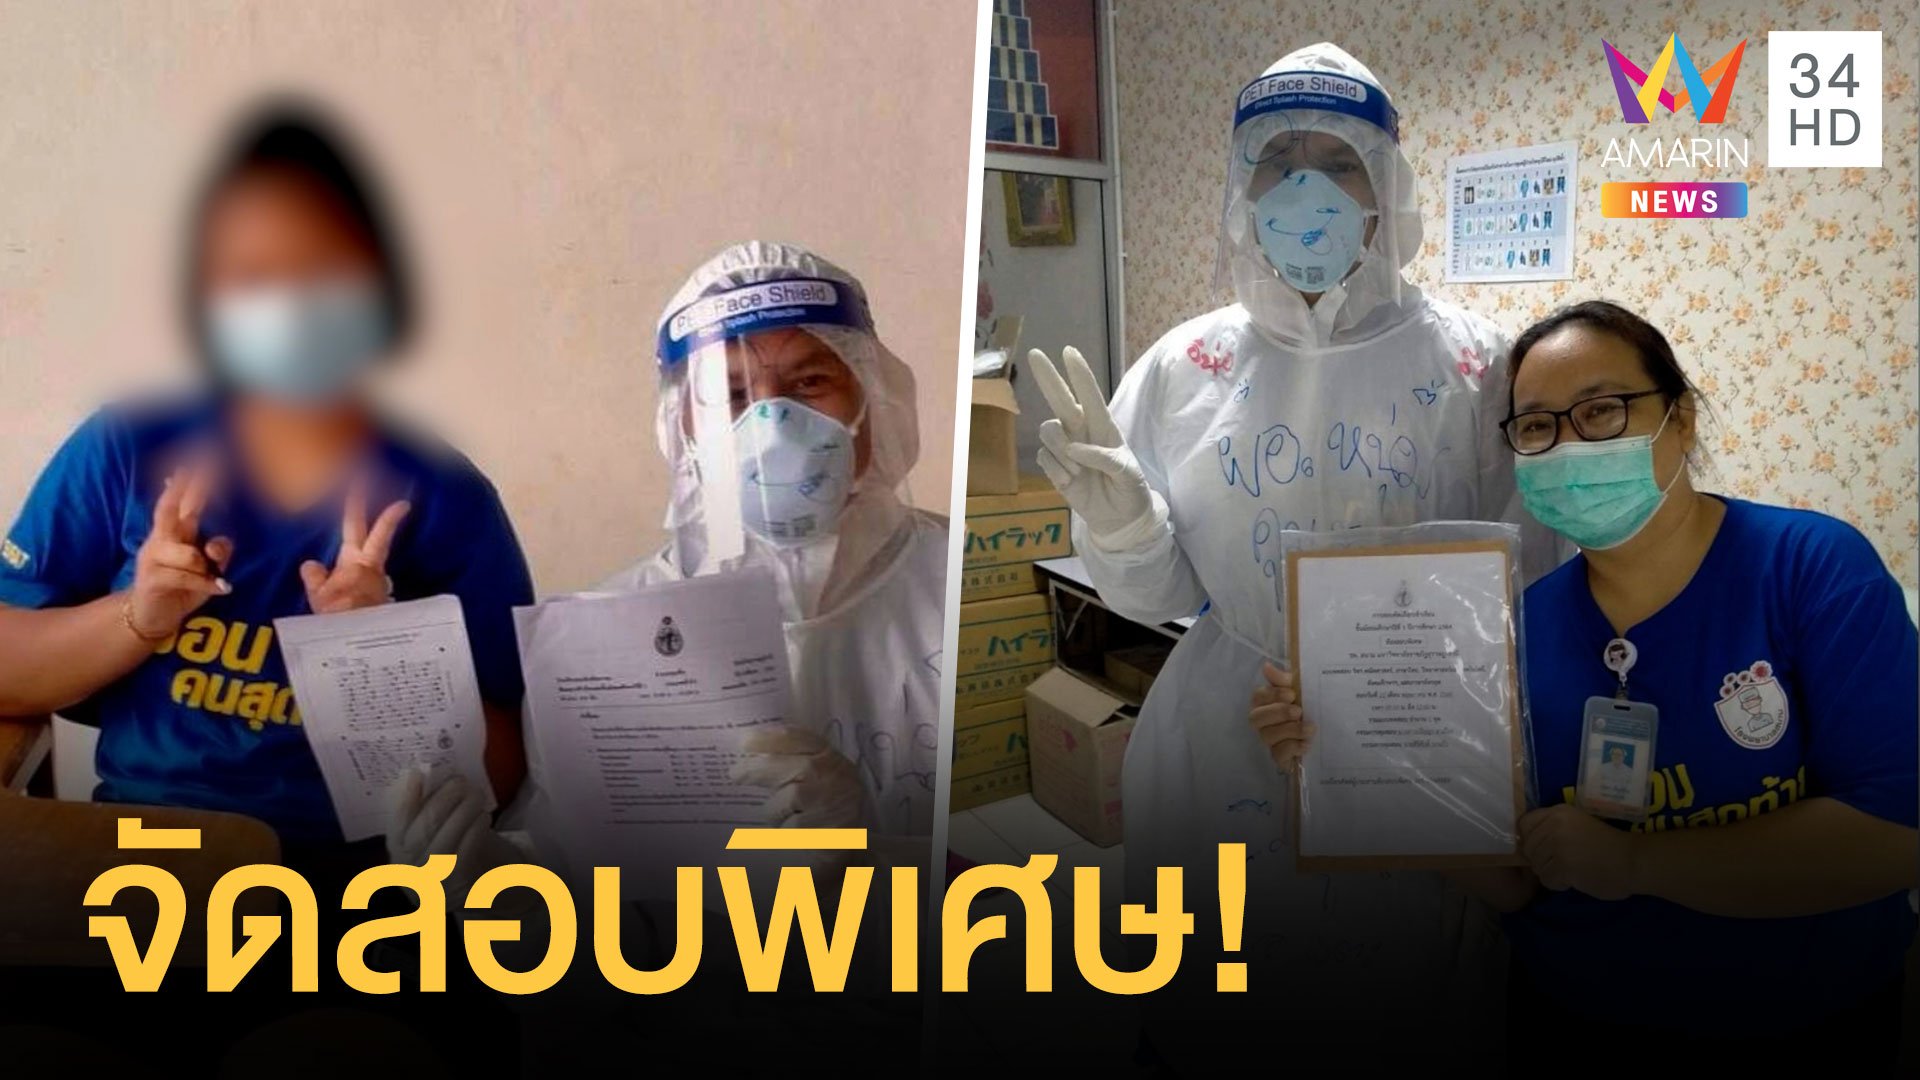 นักเรียน ป.6 ป่วยโควิด ครูจัดสอบเดี่ยวสวมชุด PPE คุมสอบให้เลย | ข่าวอรุณอมรินทร์ | 23 พ.ค. 64 | AMARIN TVHD34